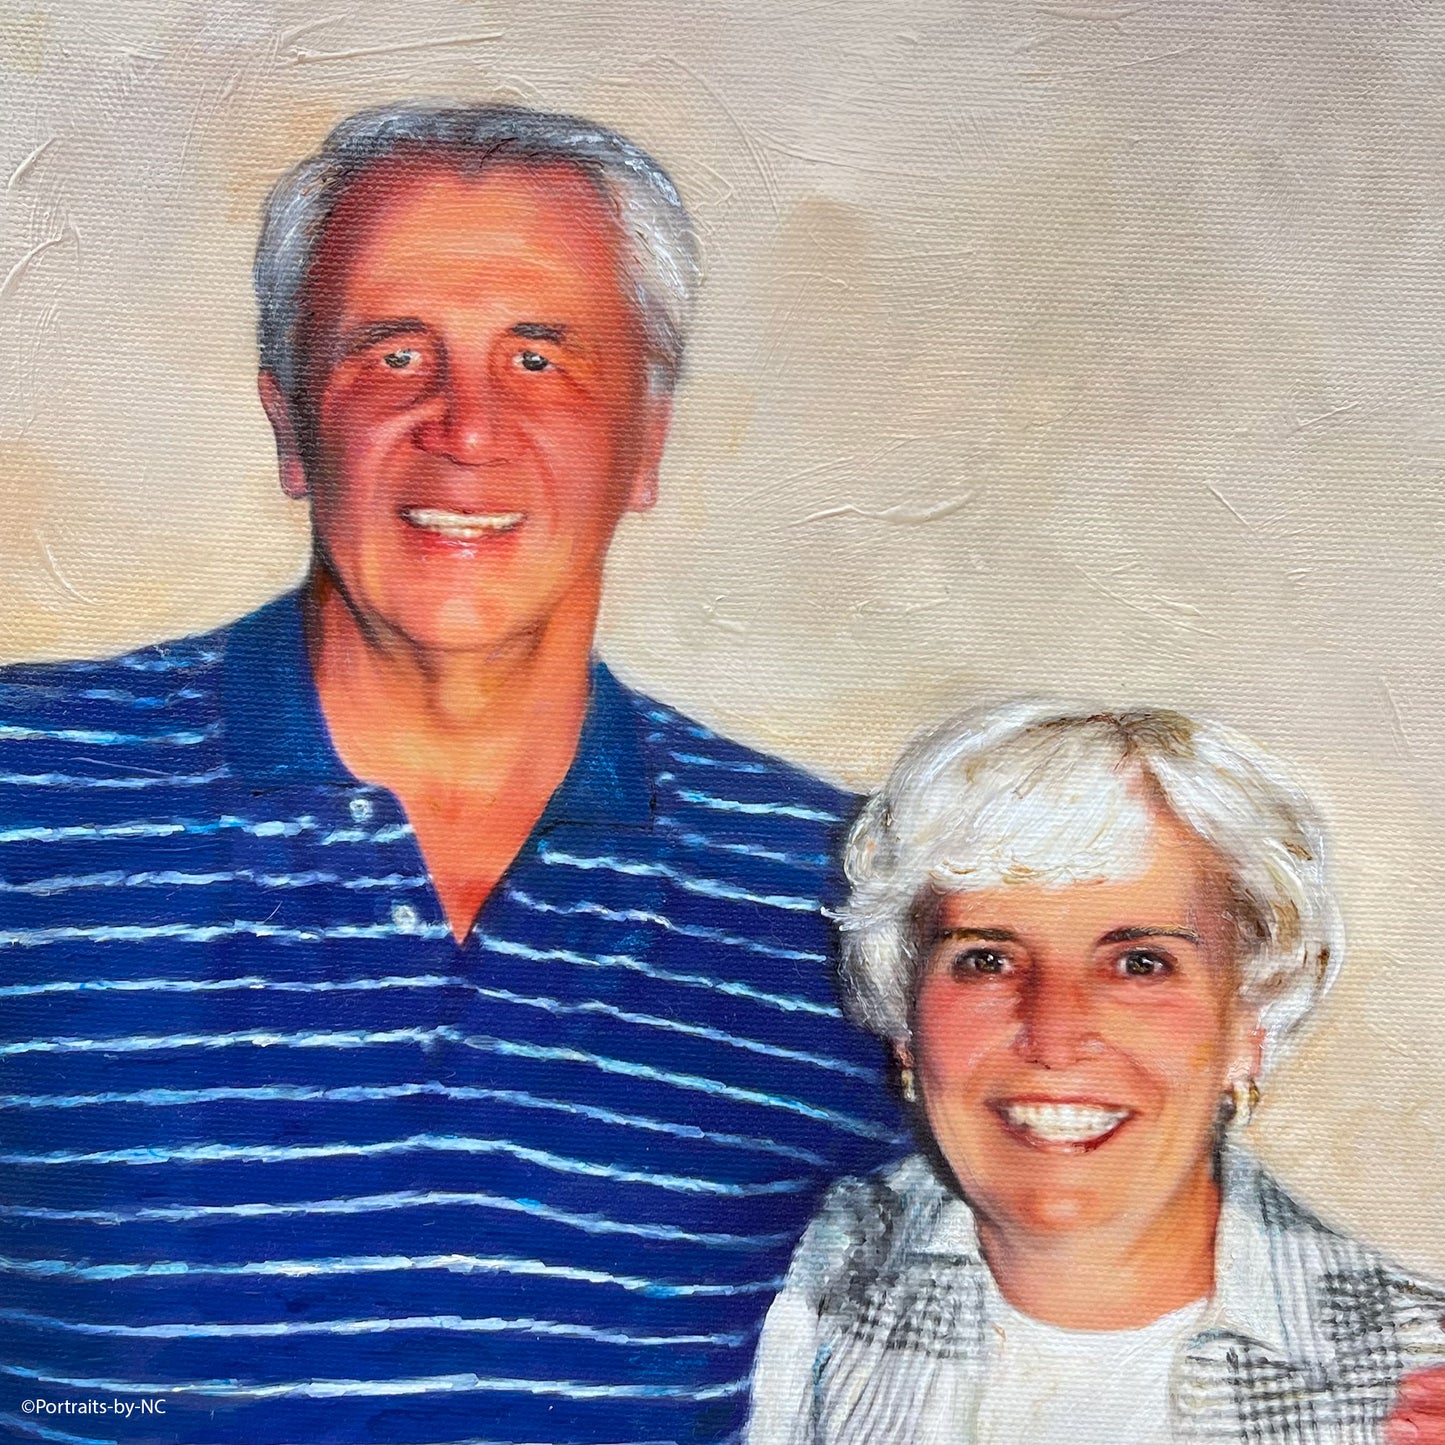 Ölportrait eines älteren Paares 